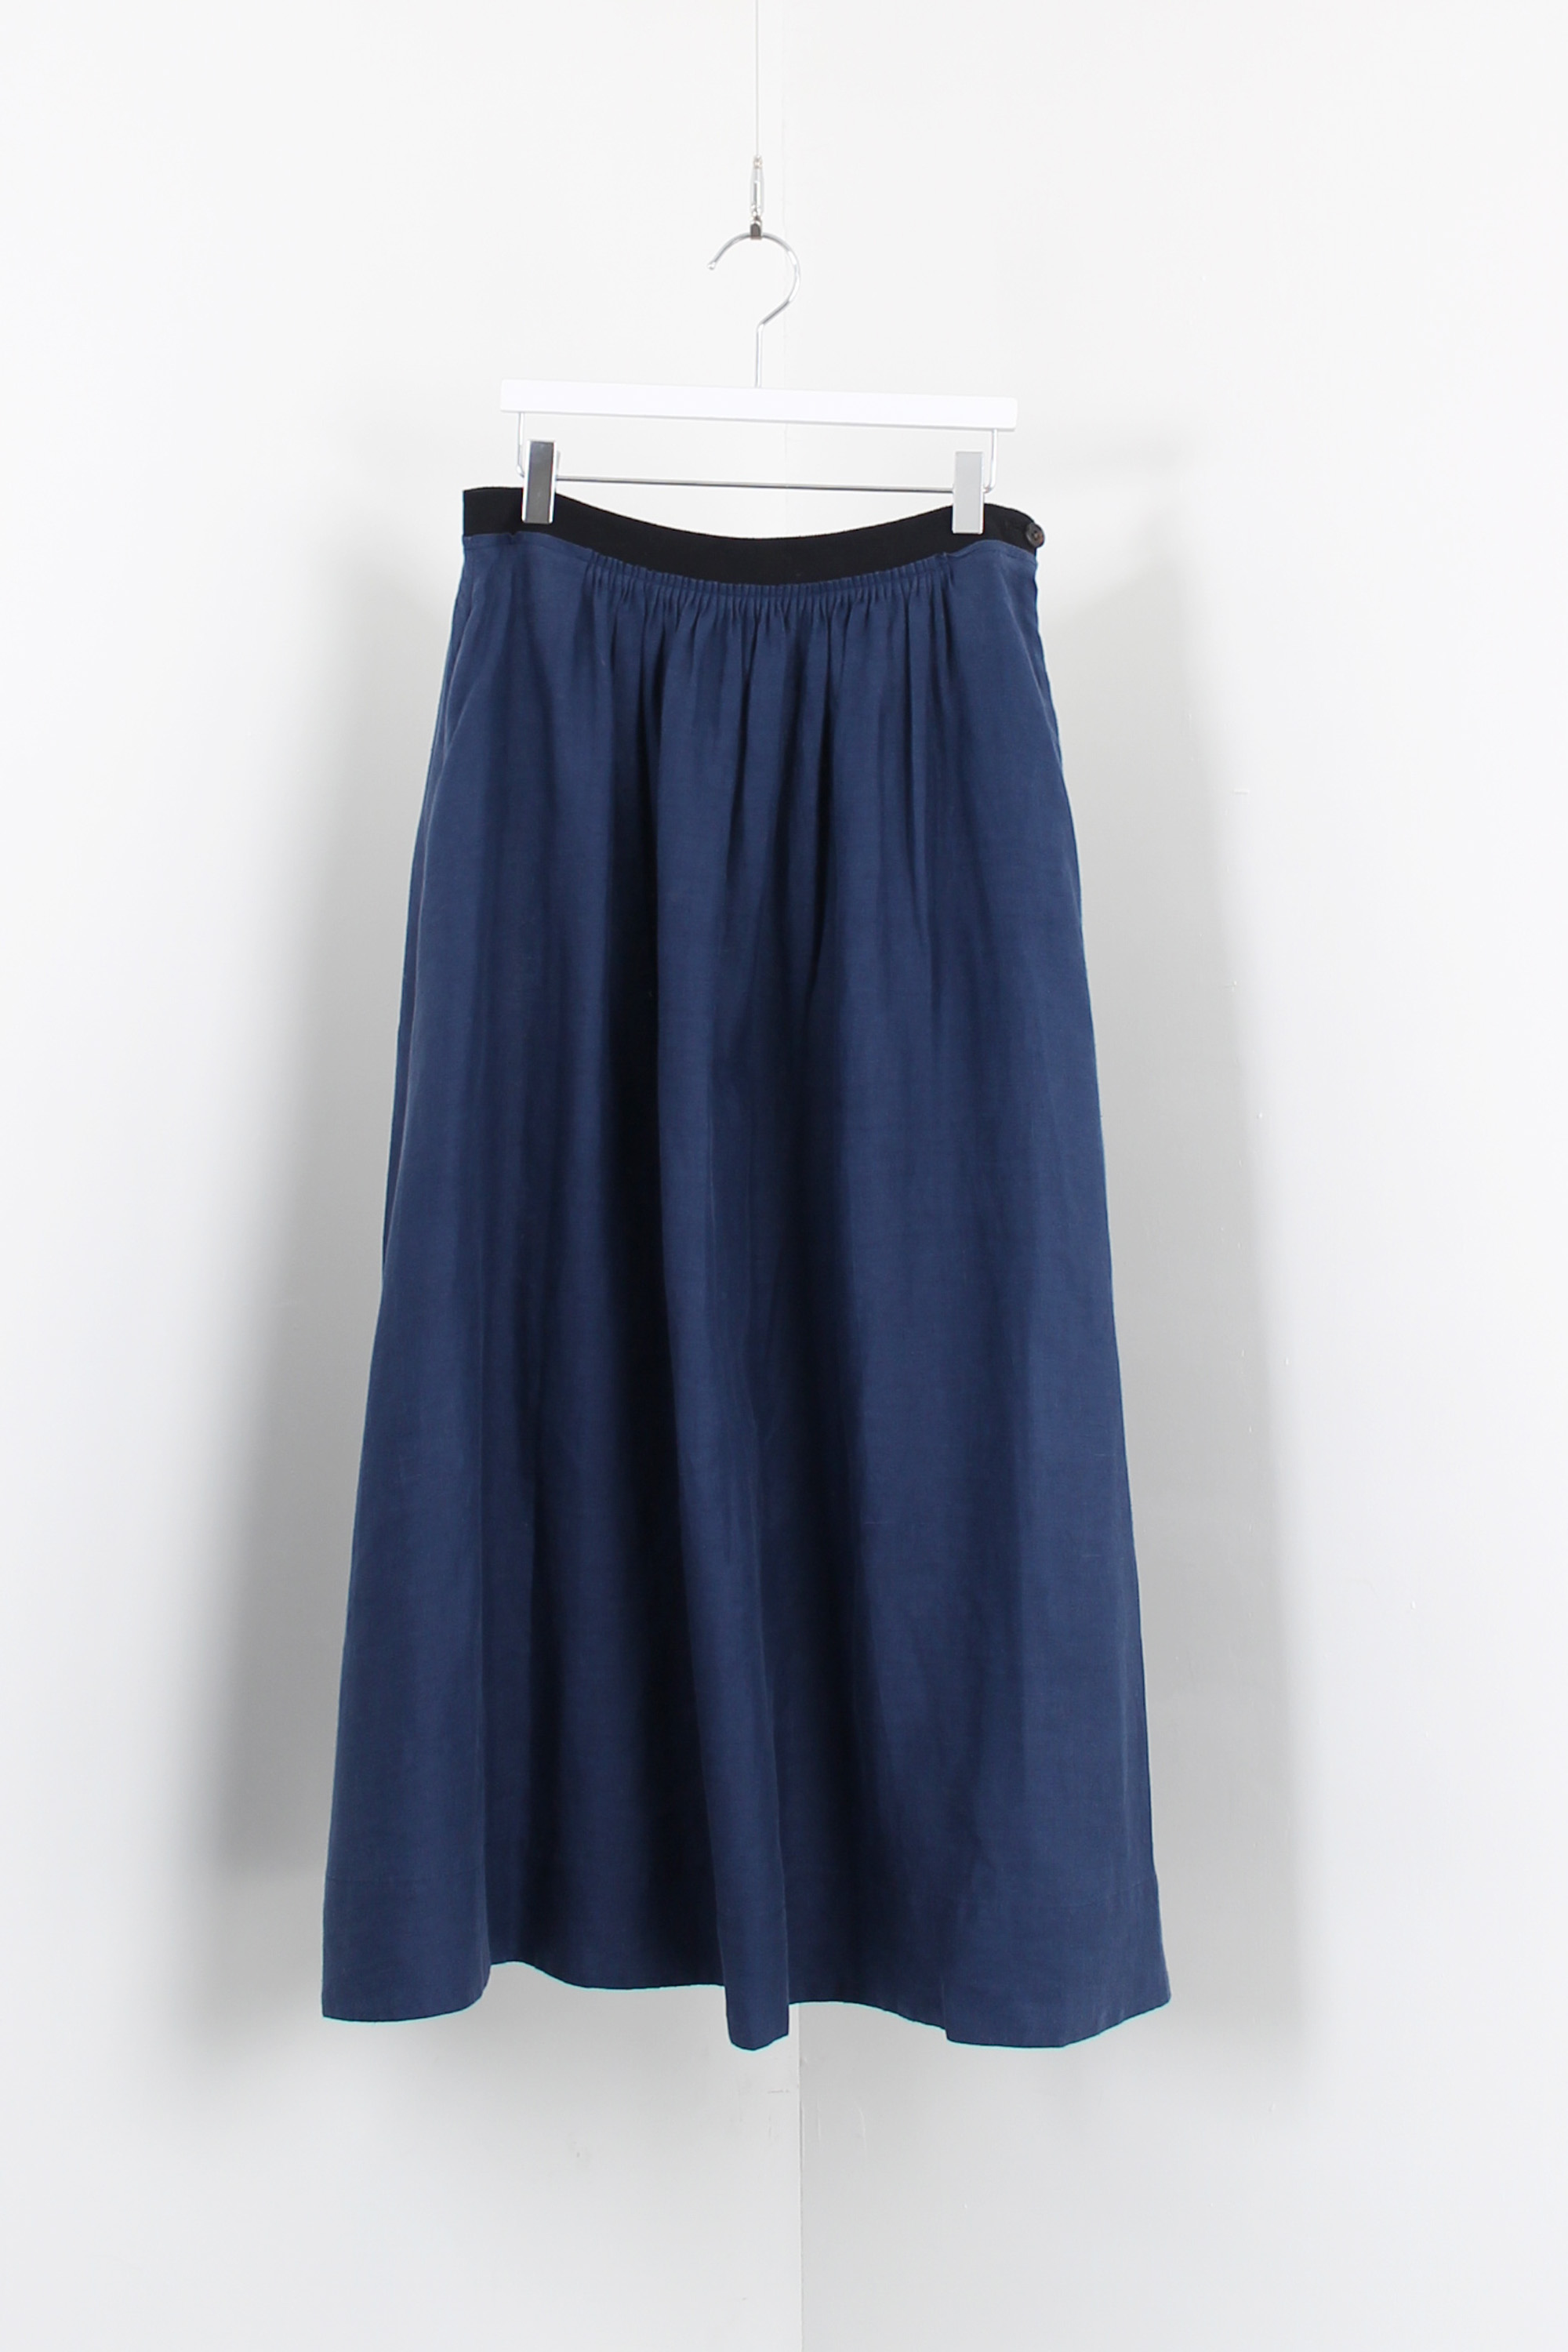 MARGARET HOWELL linen skirt